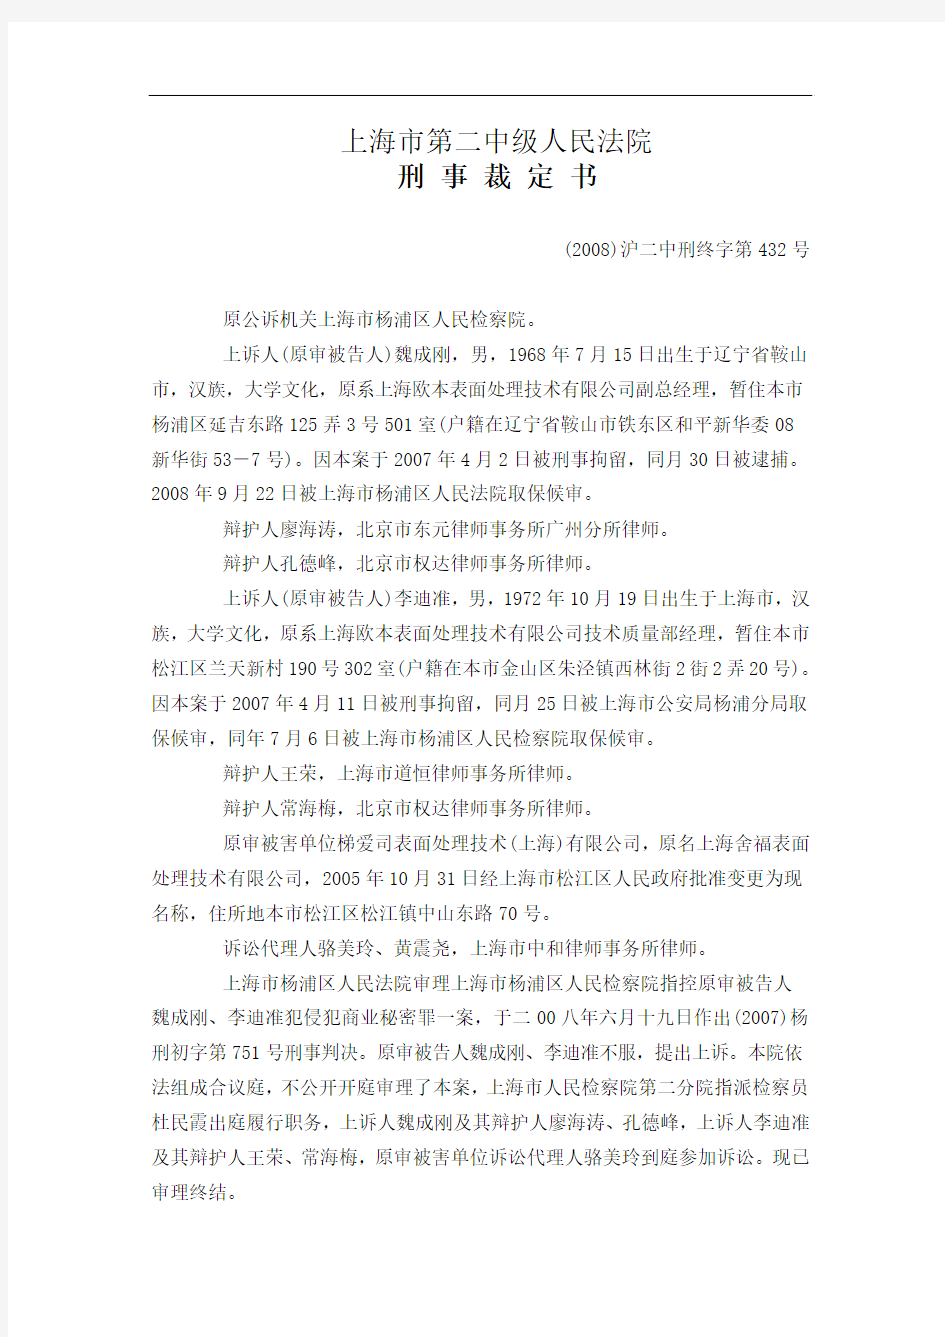 上海市第二中级人民法院侵犯商业秘密判例